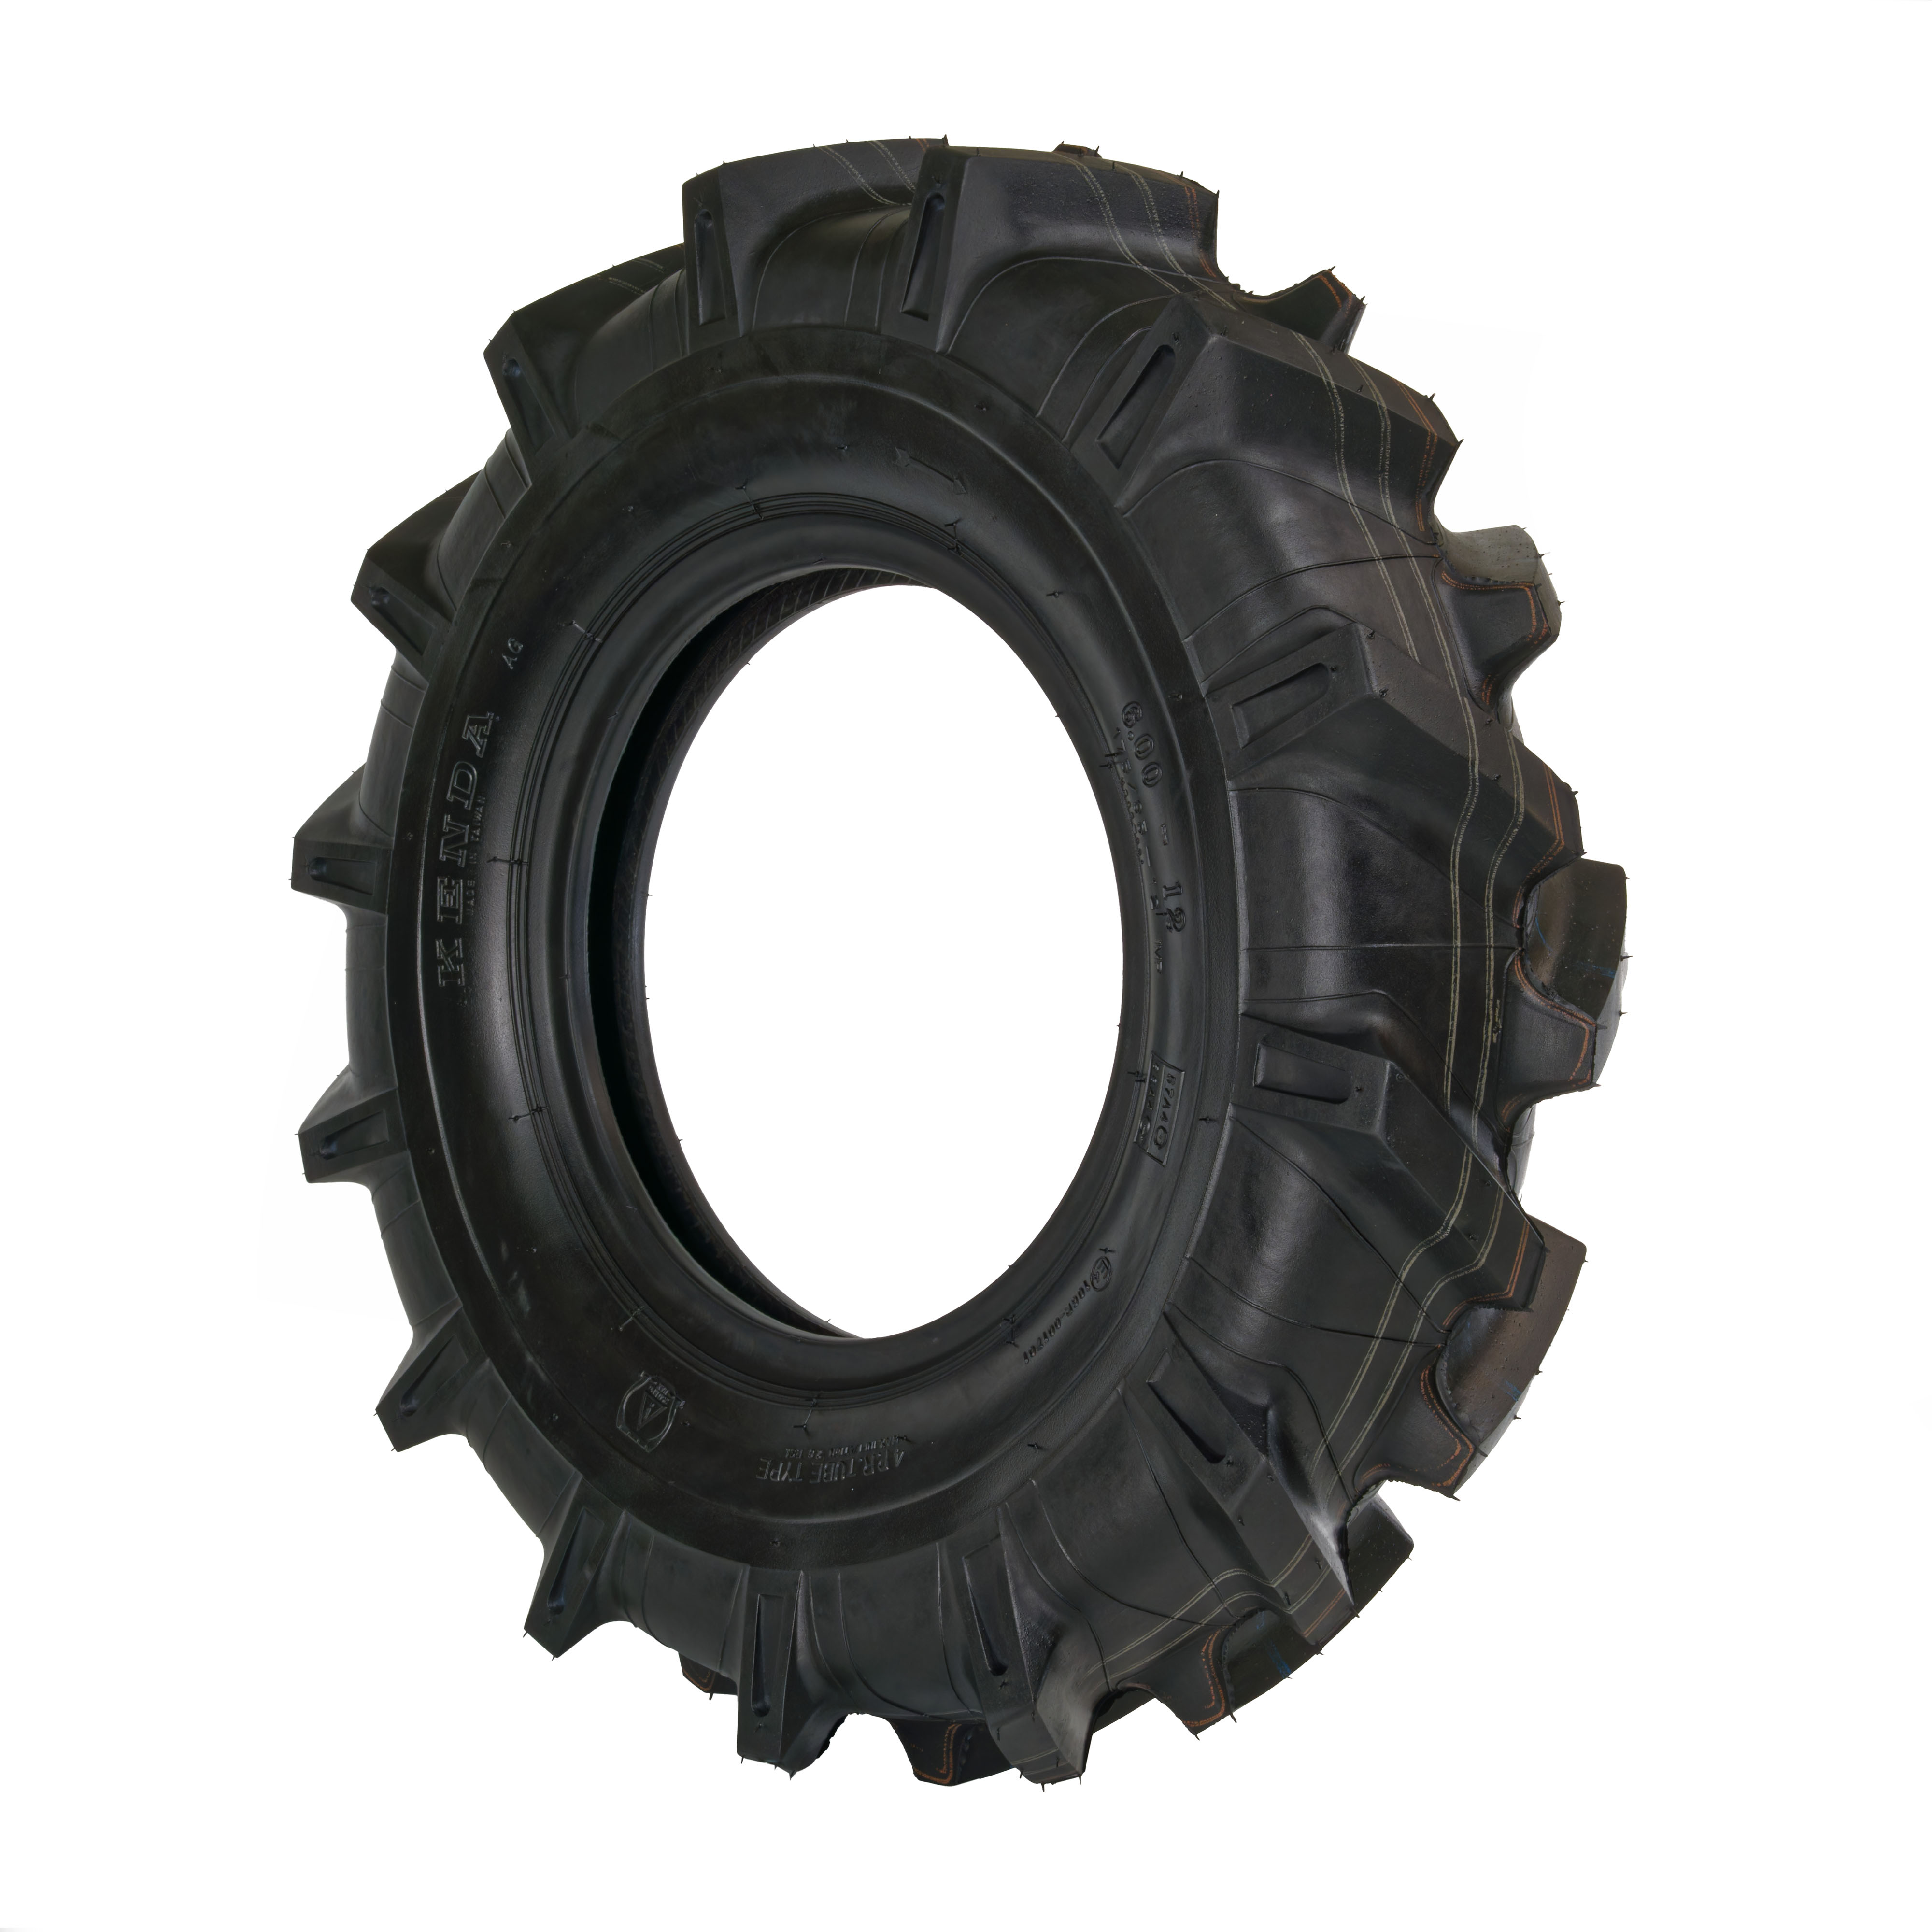 Reifen für Einachstraktor 6.00-12, 4PR, Kenda K365, AS